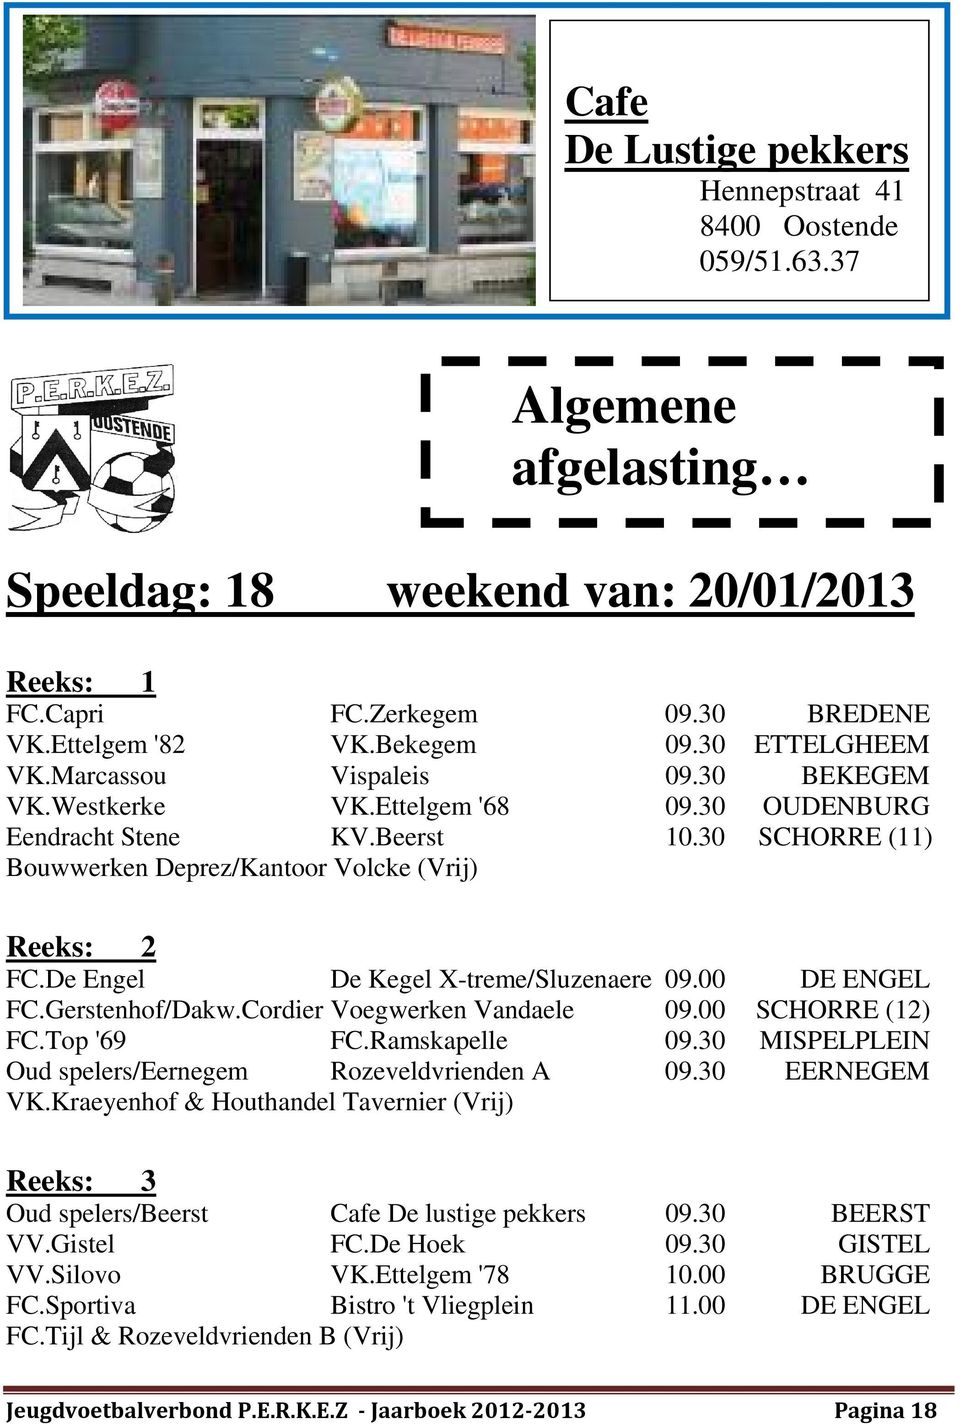 De Engel De Kegel X-treme/Sluzenaere 09.00 DE ENGEL FC.Gerstenhof/Dakw.Cordier Voegwerken Vandaele 09.00 SCHORRE (12) FC.Top '69 FC.Ramskapelle 09.